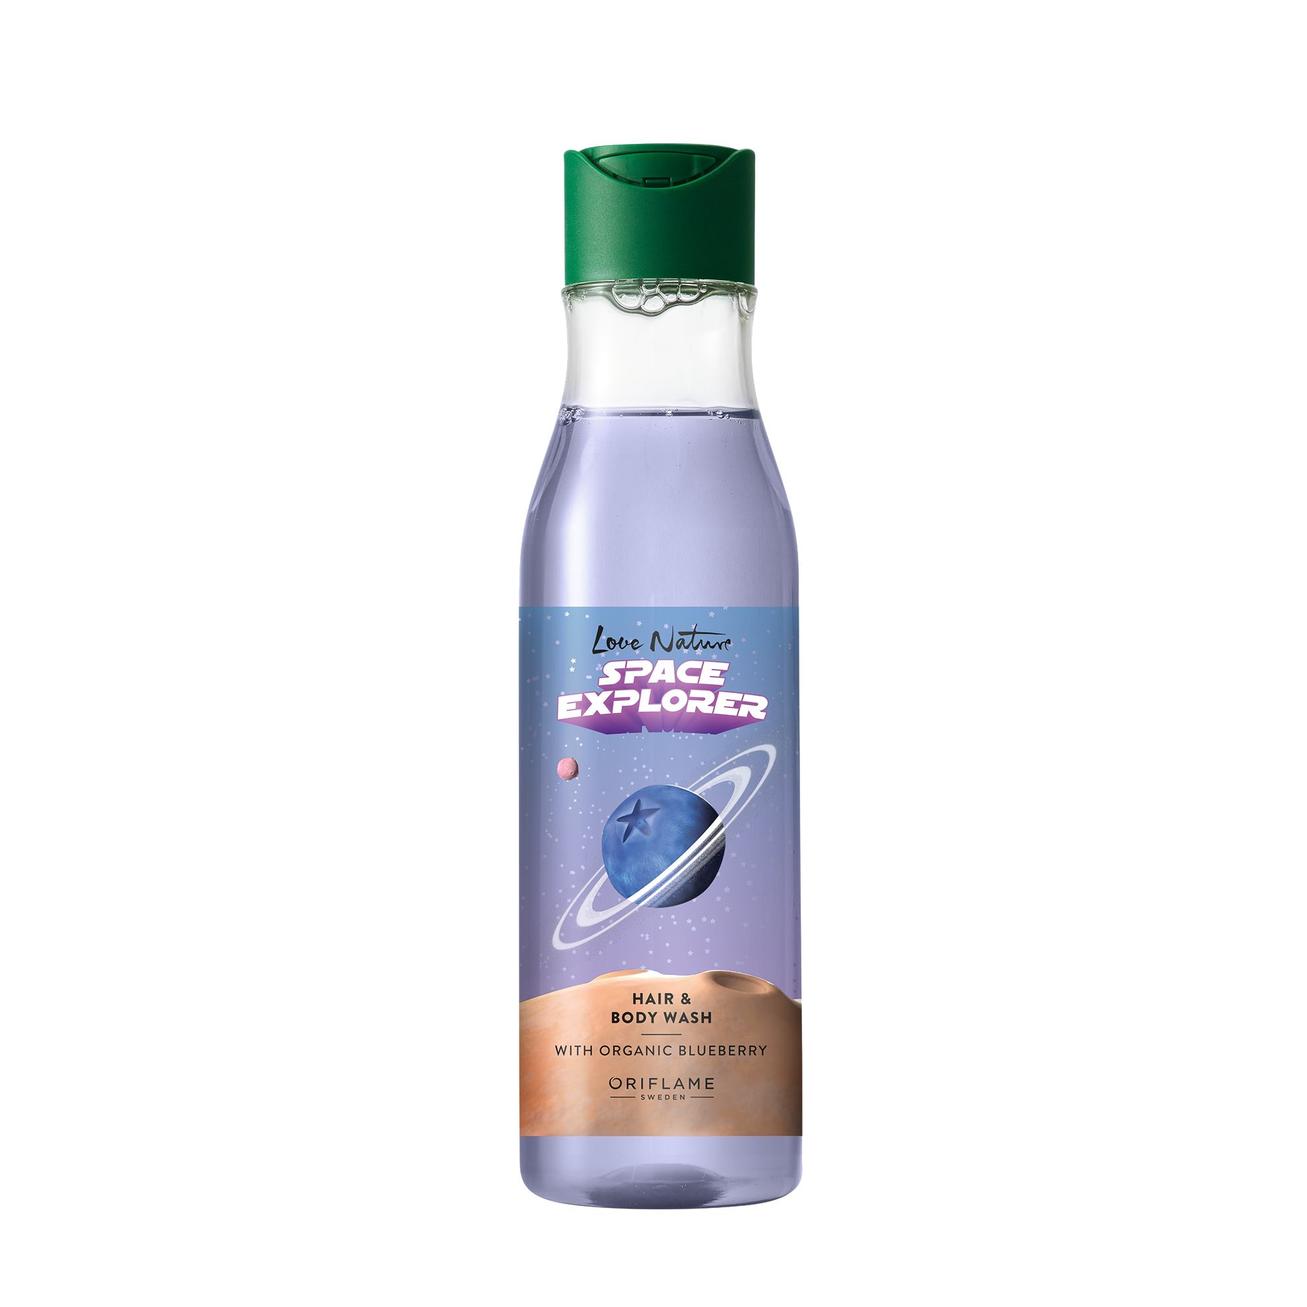 Aanbieding van Space Explorer Hair & Body Wash with Organic Blueberry voor 12€ bij Oriflame